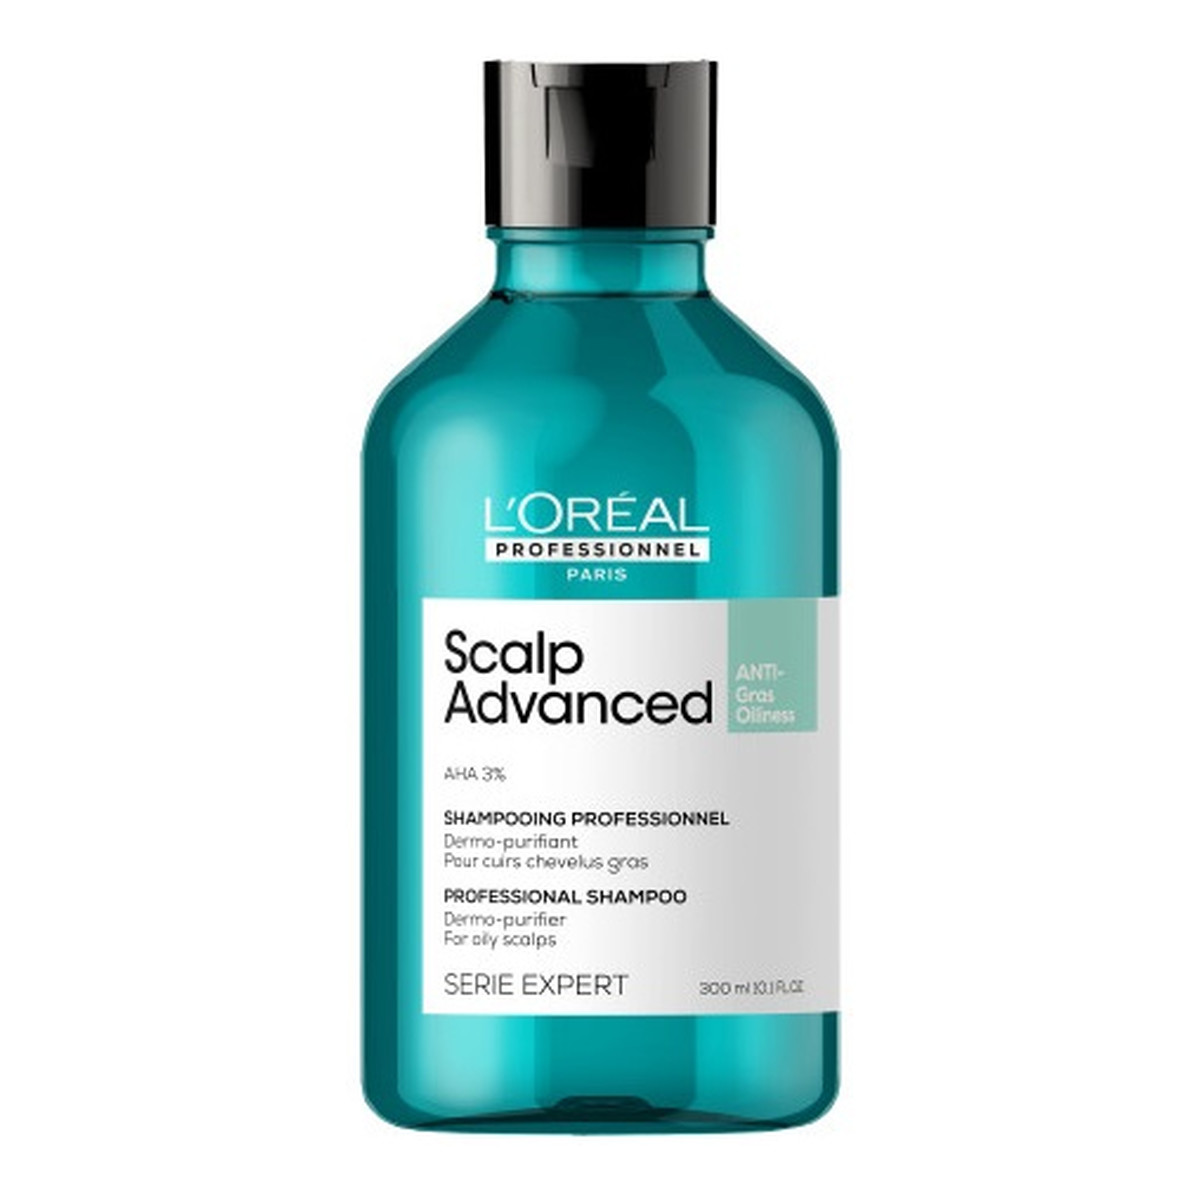 L'Oreal Paris Serie expert scalp advanced shampoo oczyszczający szampon do przetłuszczającej się skóry głowy 300ml